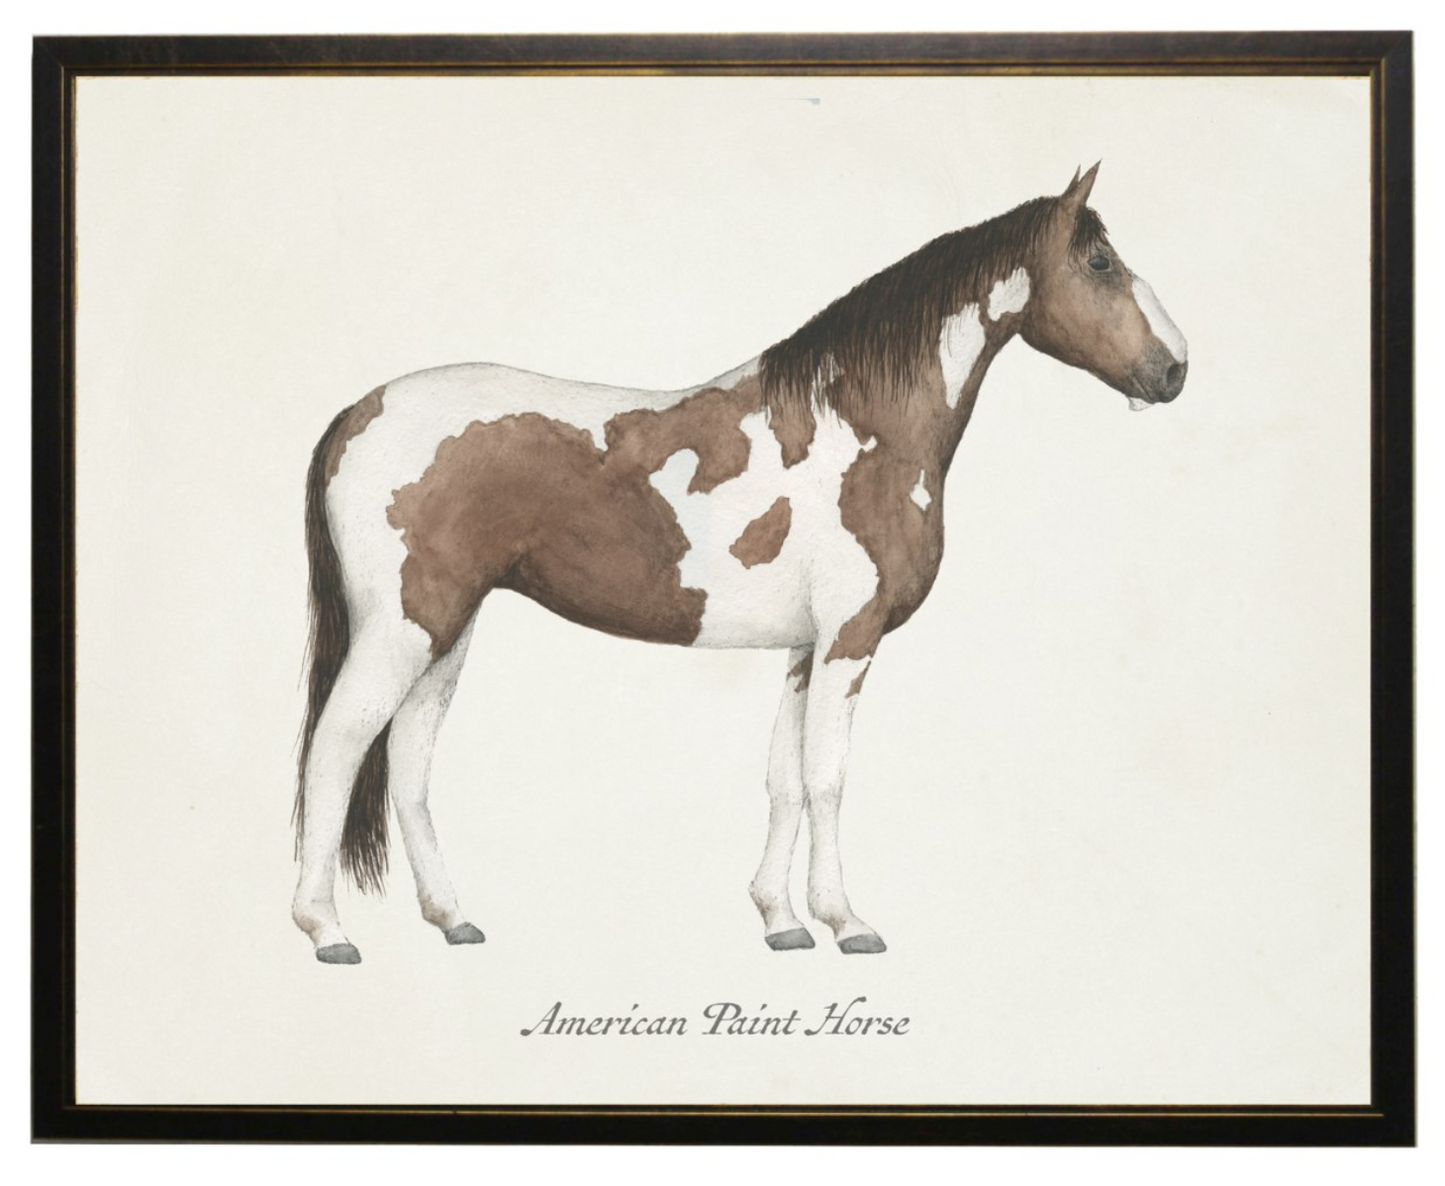 Framed Art, American Paint Horse